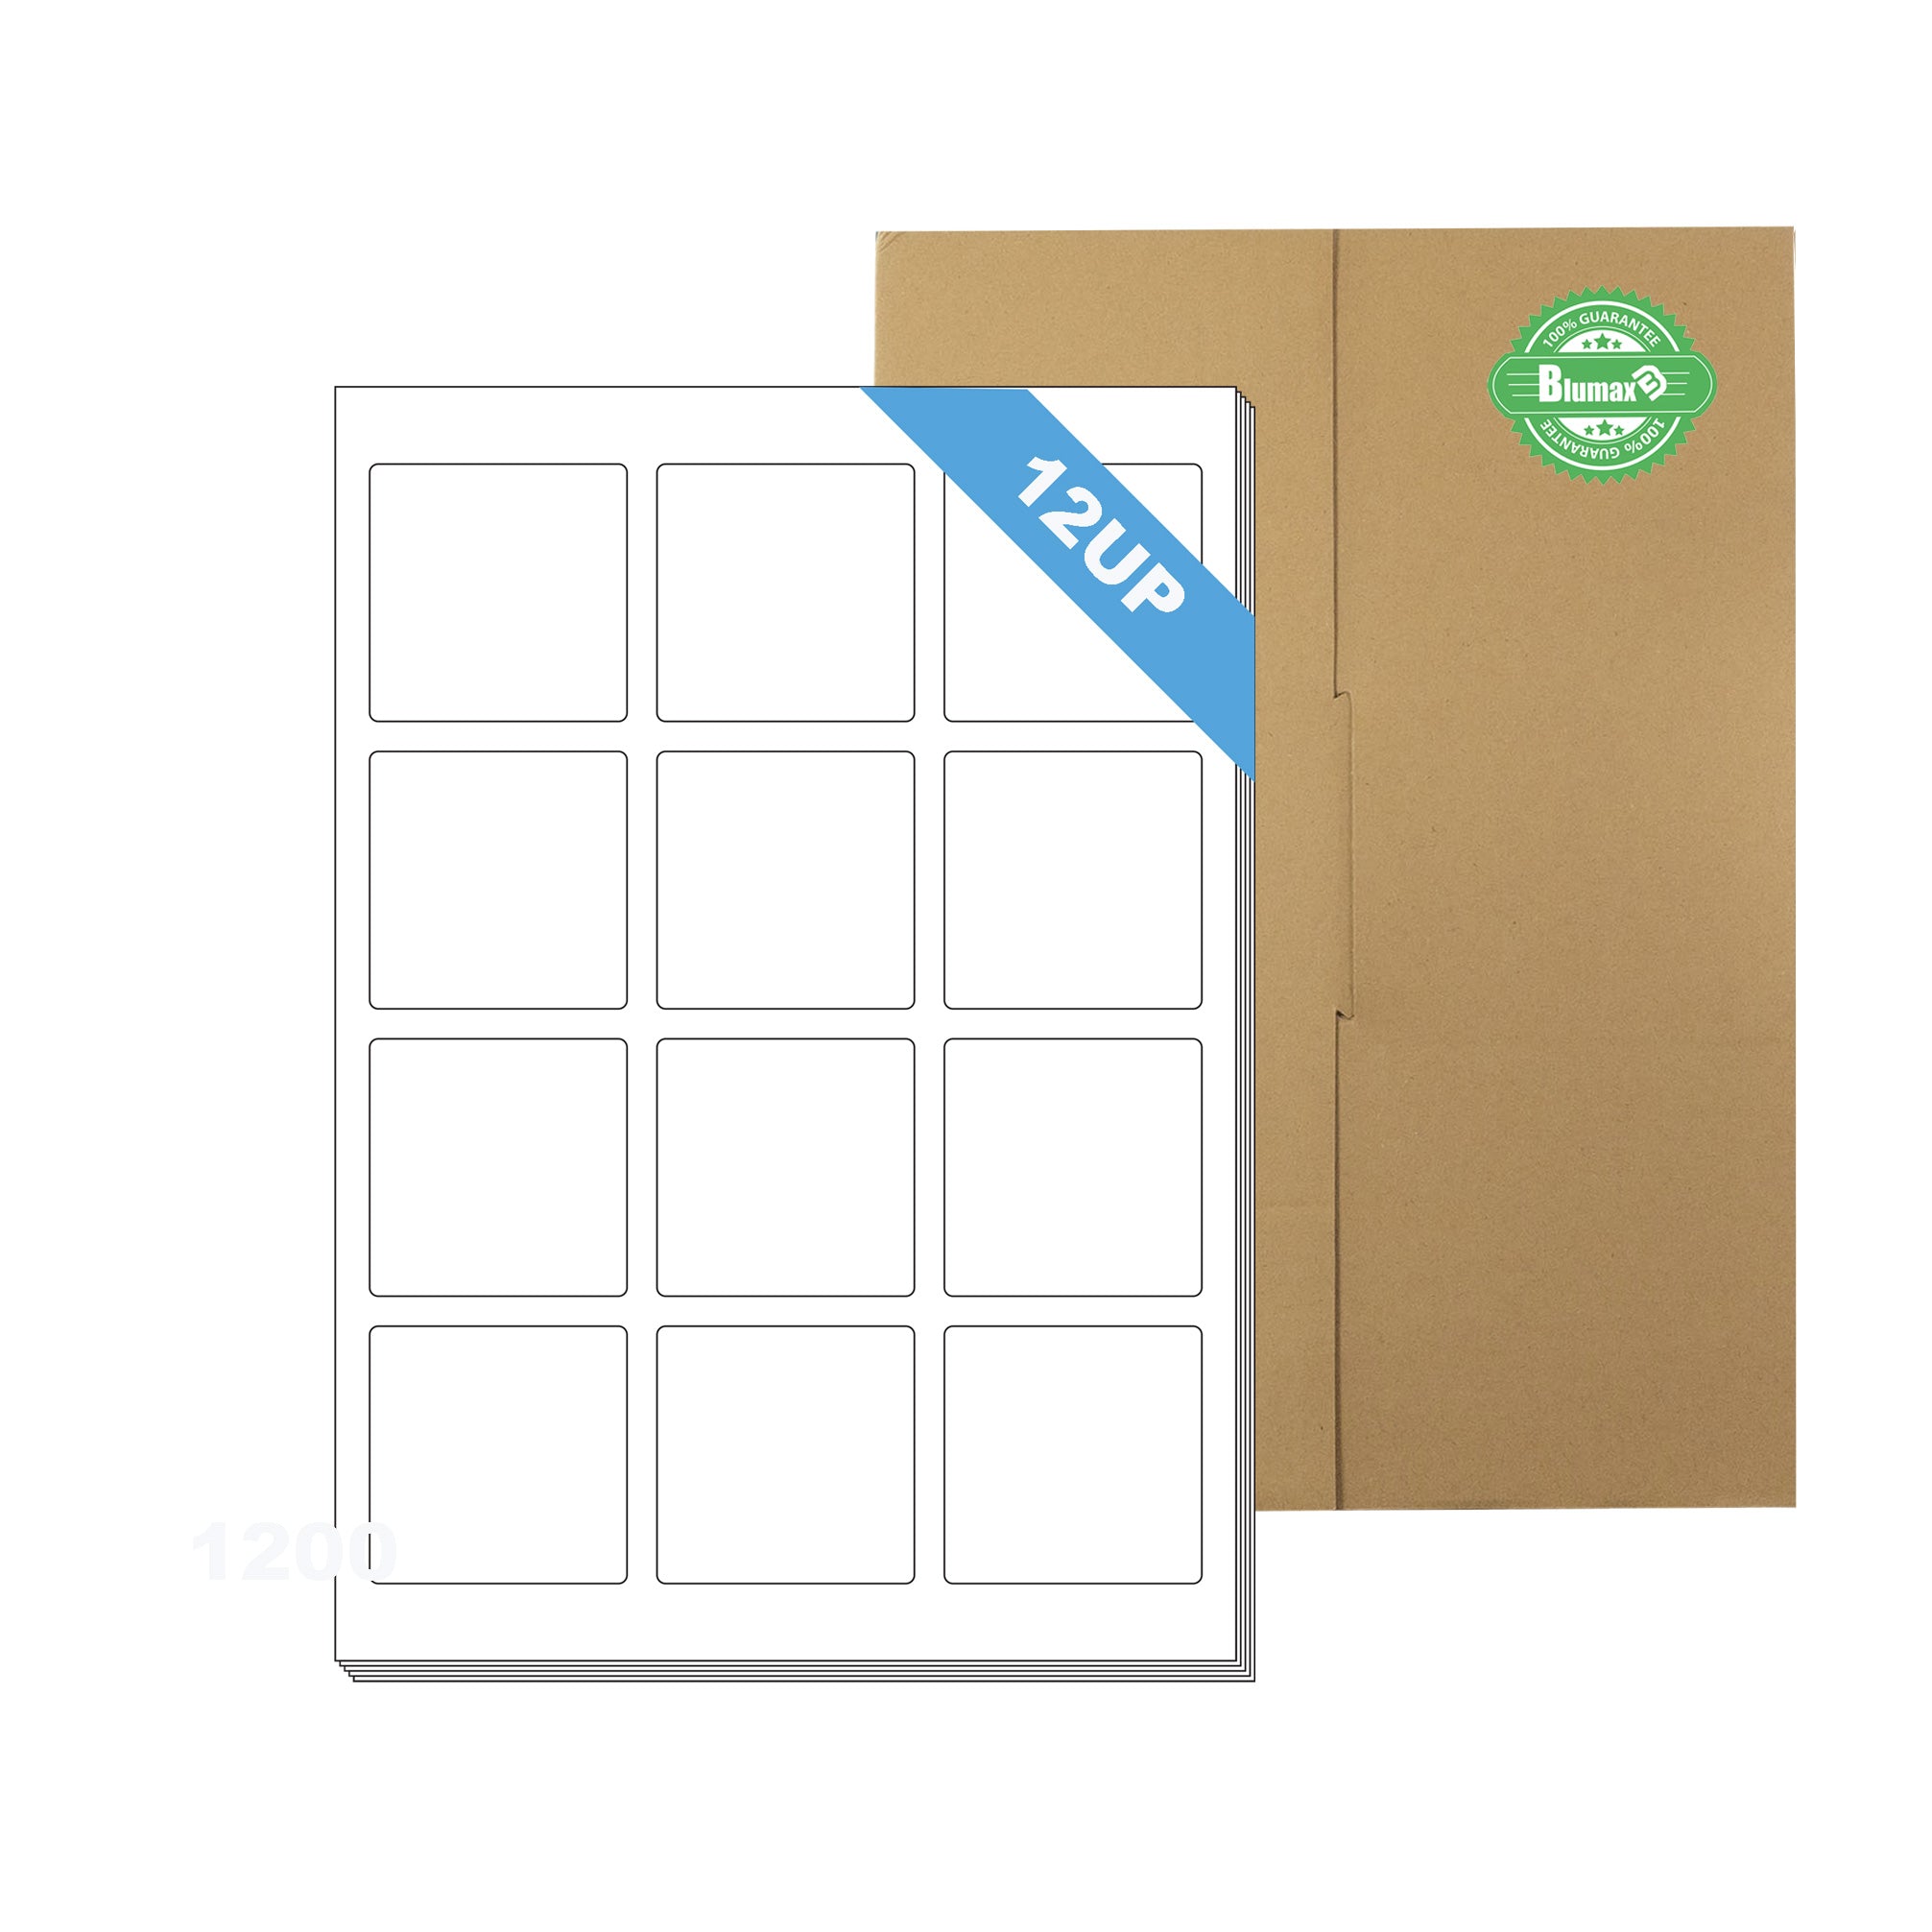 A4 Format Square Labels 60 x 60mm 12 Labels Per Sheet/ 1000 Sheets